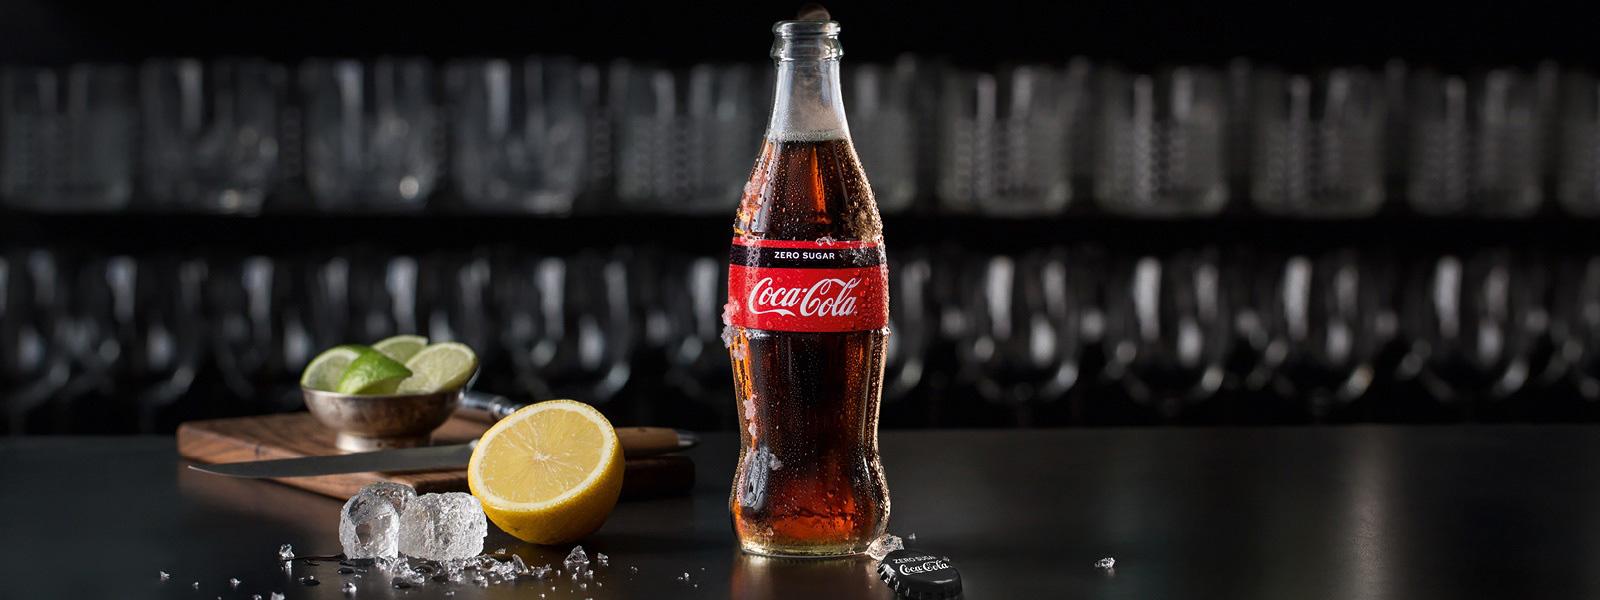 En glasflaske med Coca-Cola Original smag står på bordet sammen med en citron